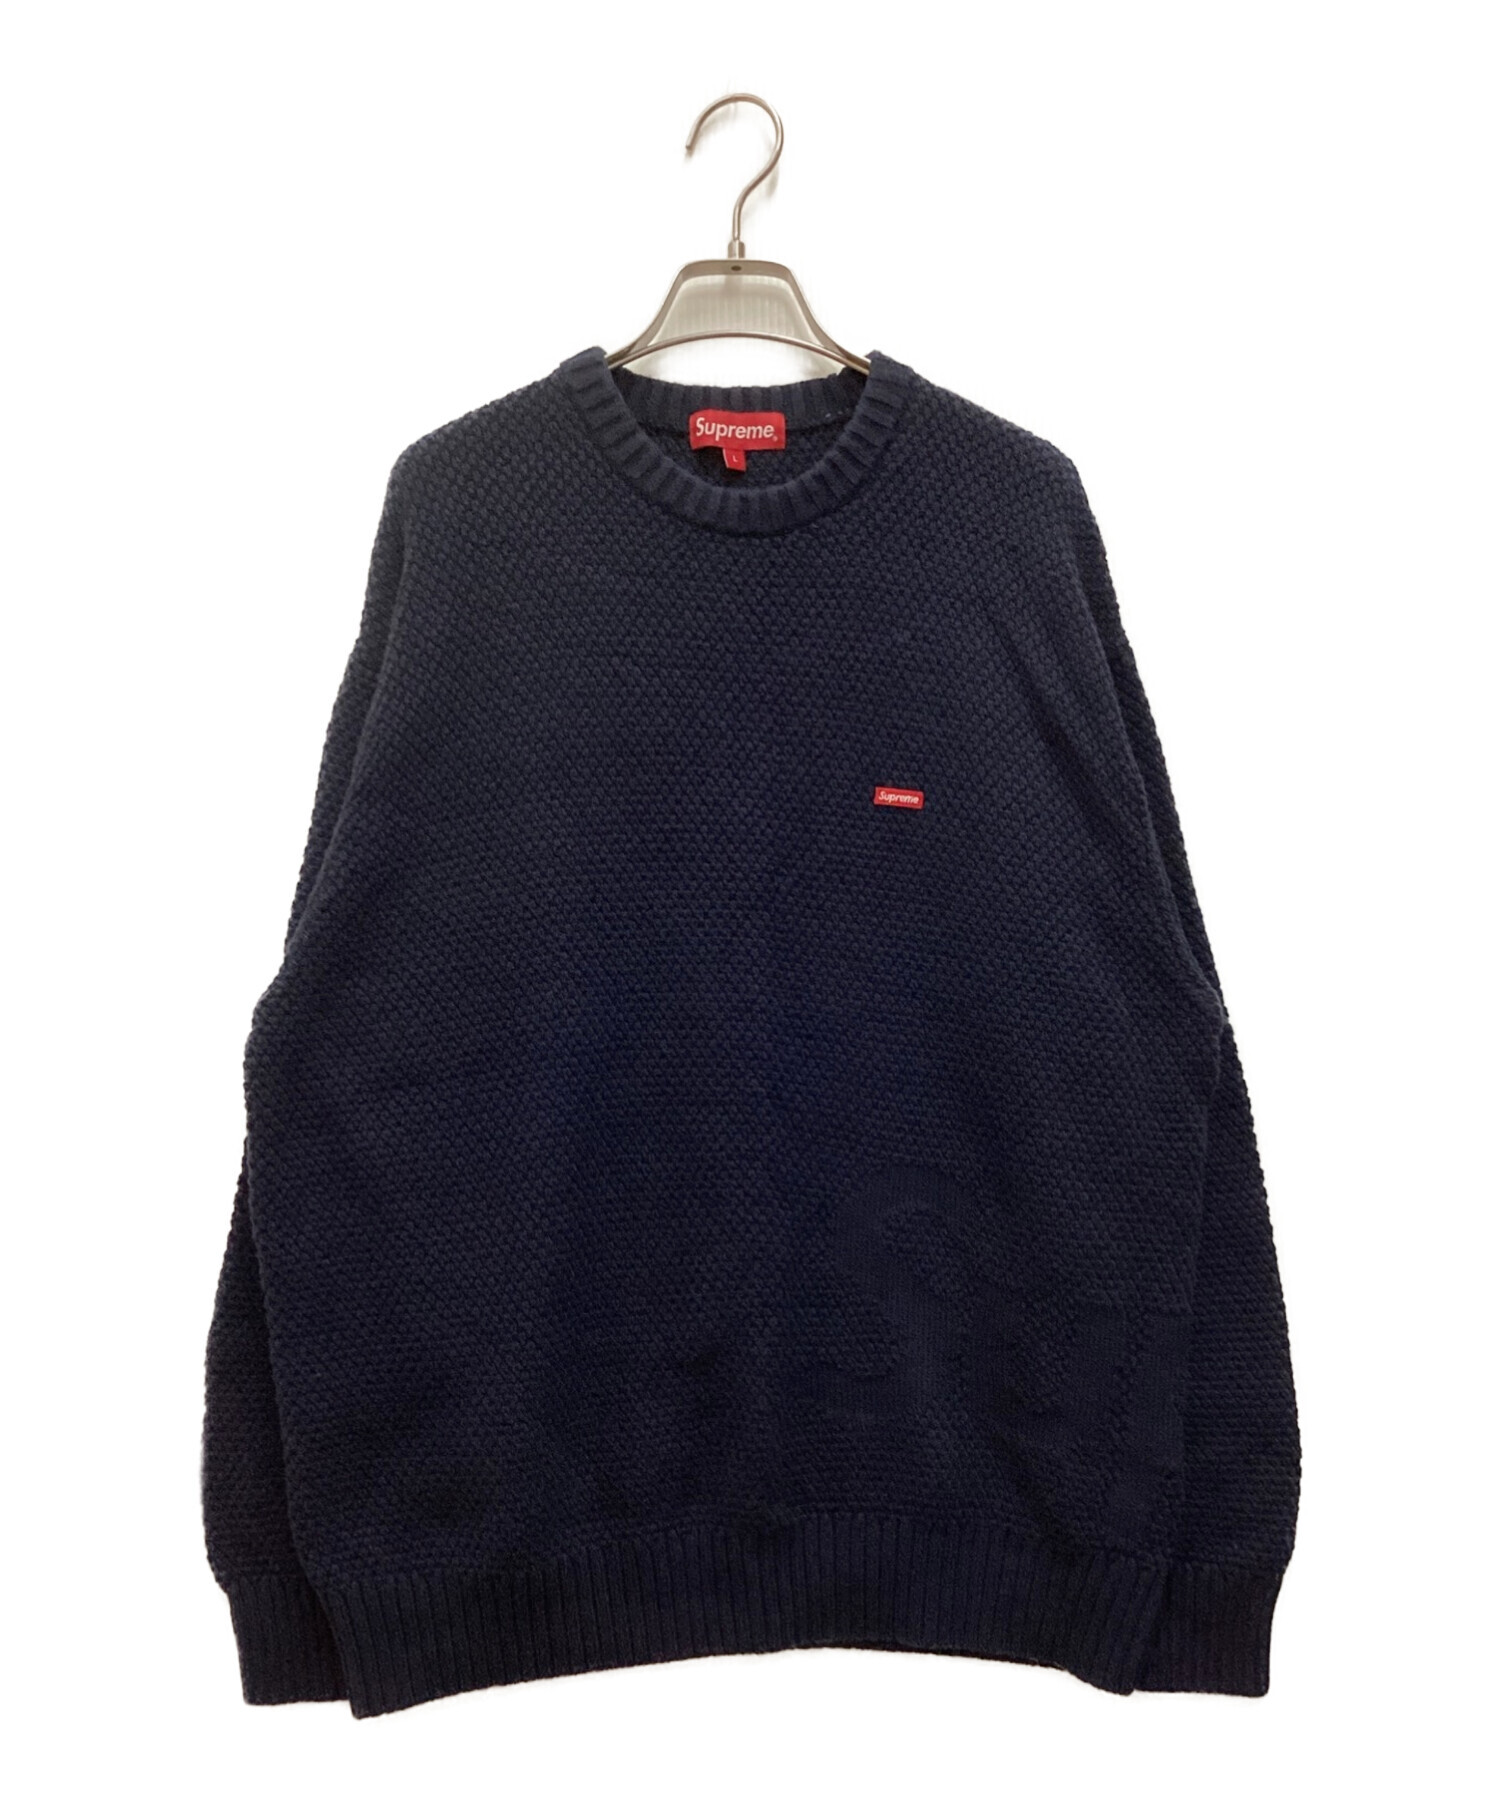 ニット/セーターSupreme small box logo sweater L - ニット/セーター